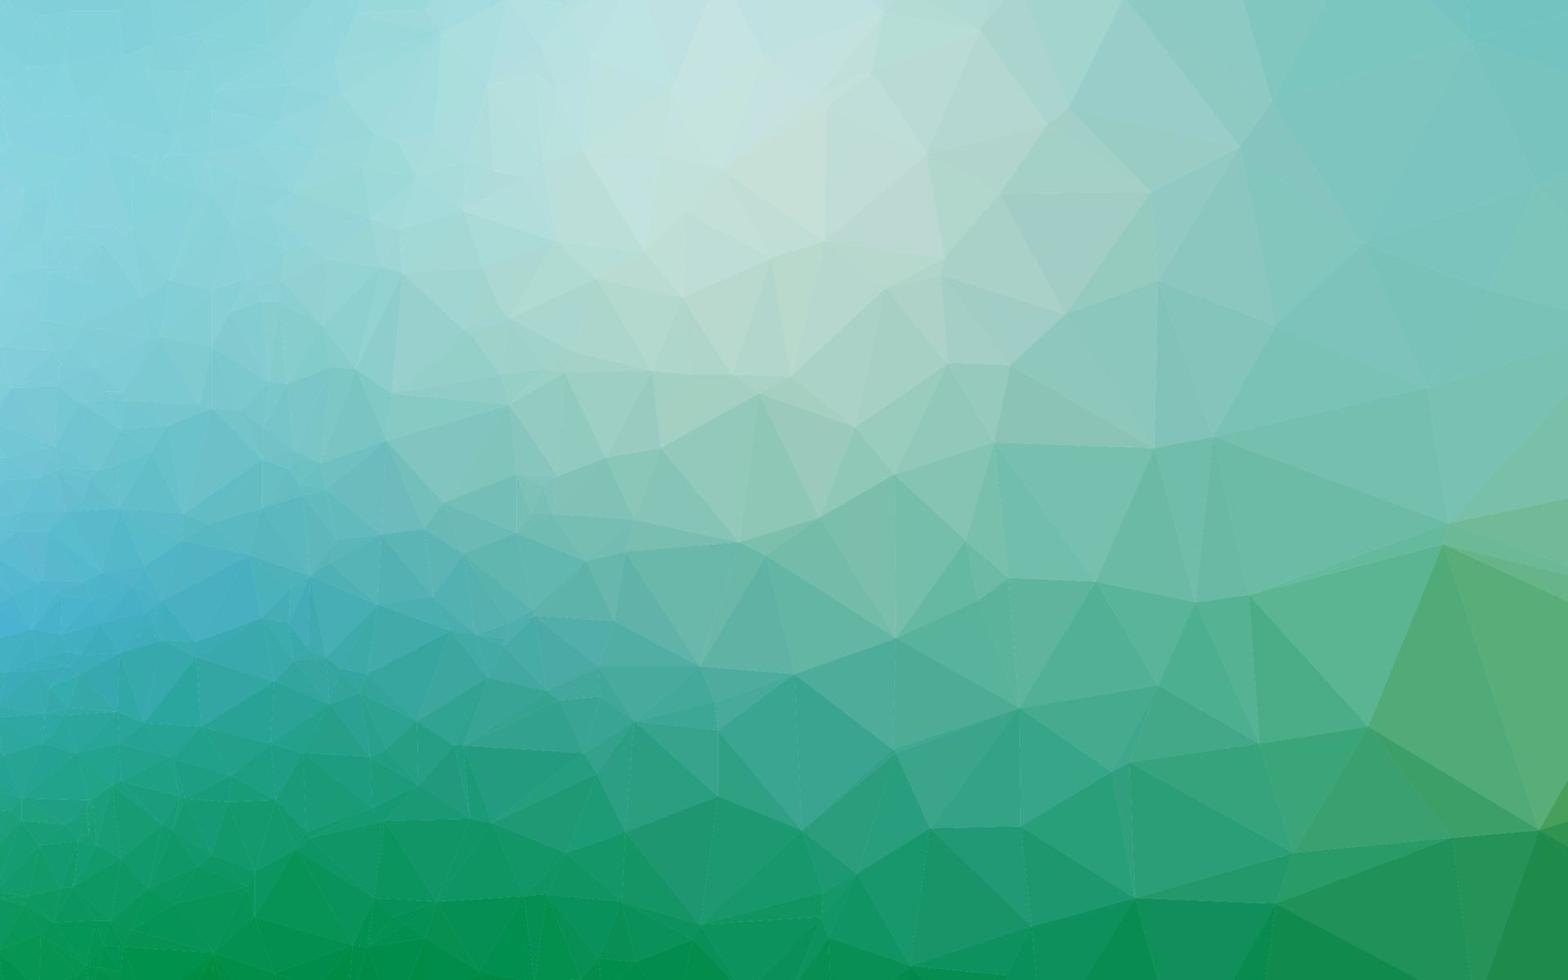 ljusblå, grön vektor polygon abstrakt layout.